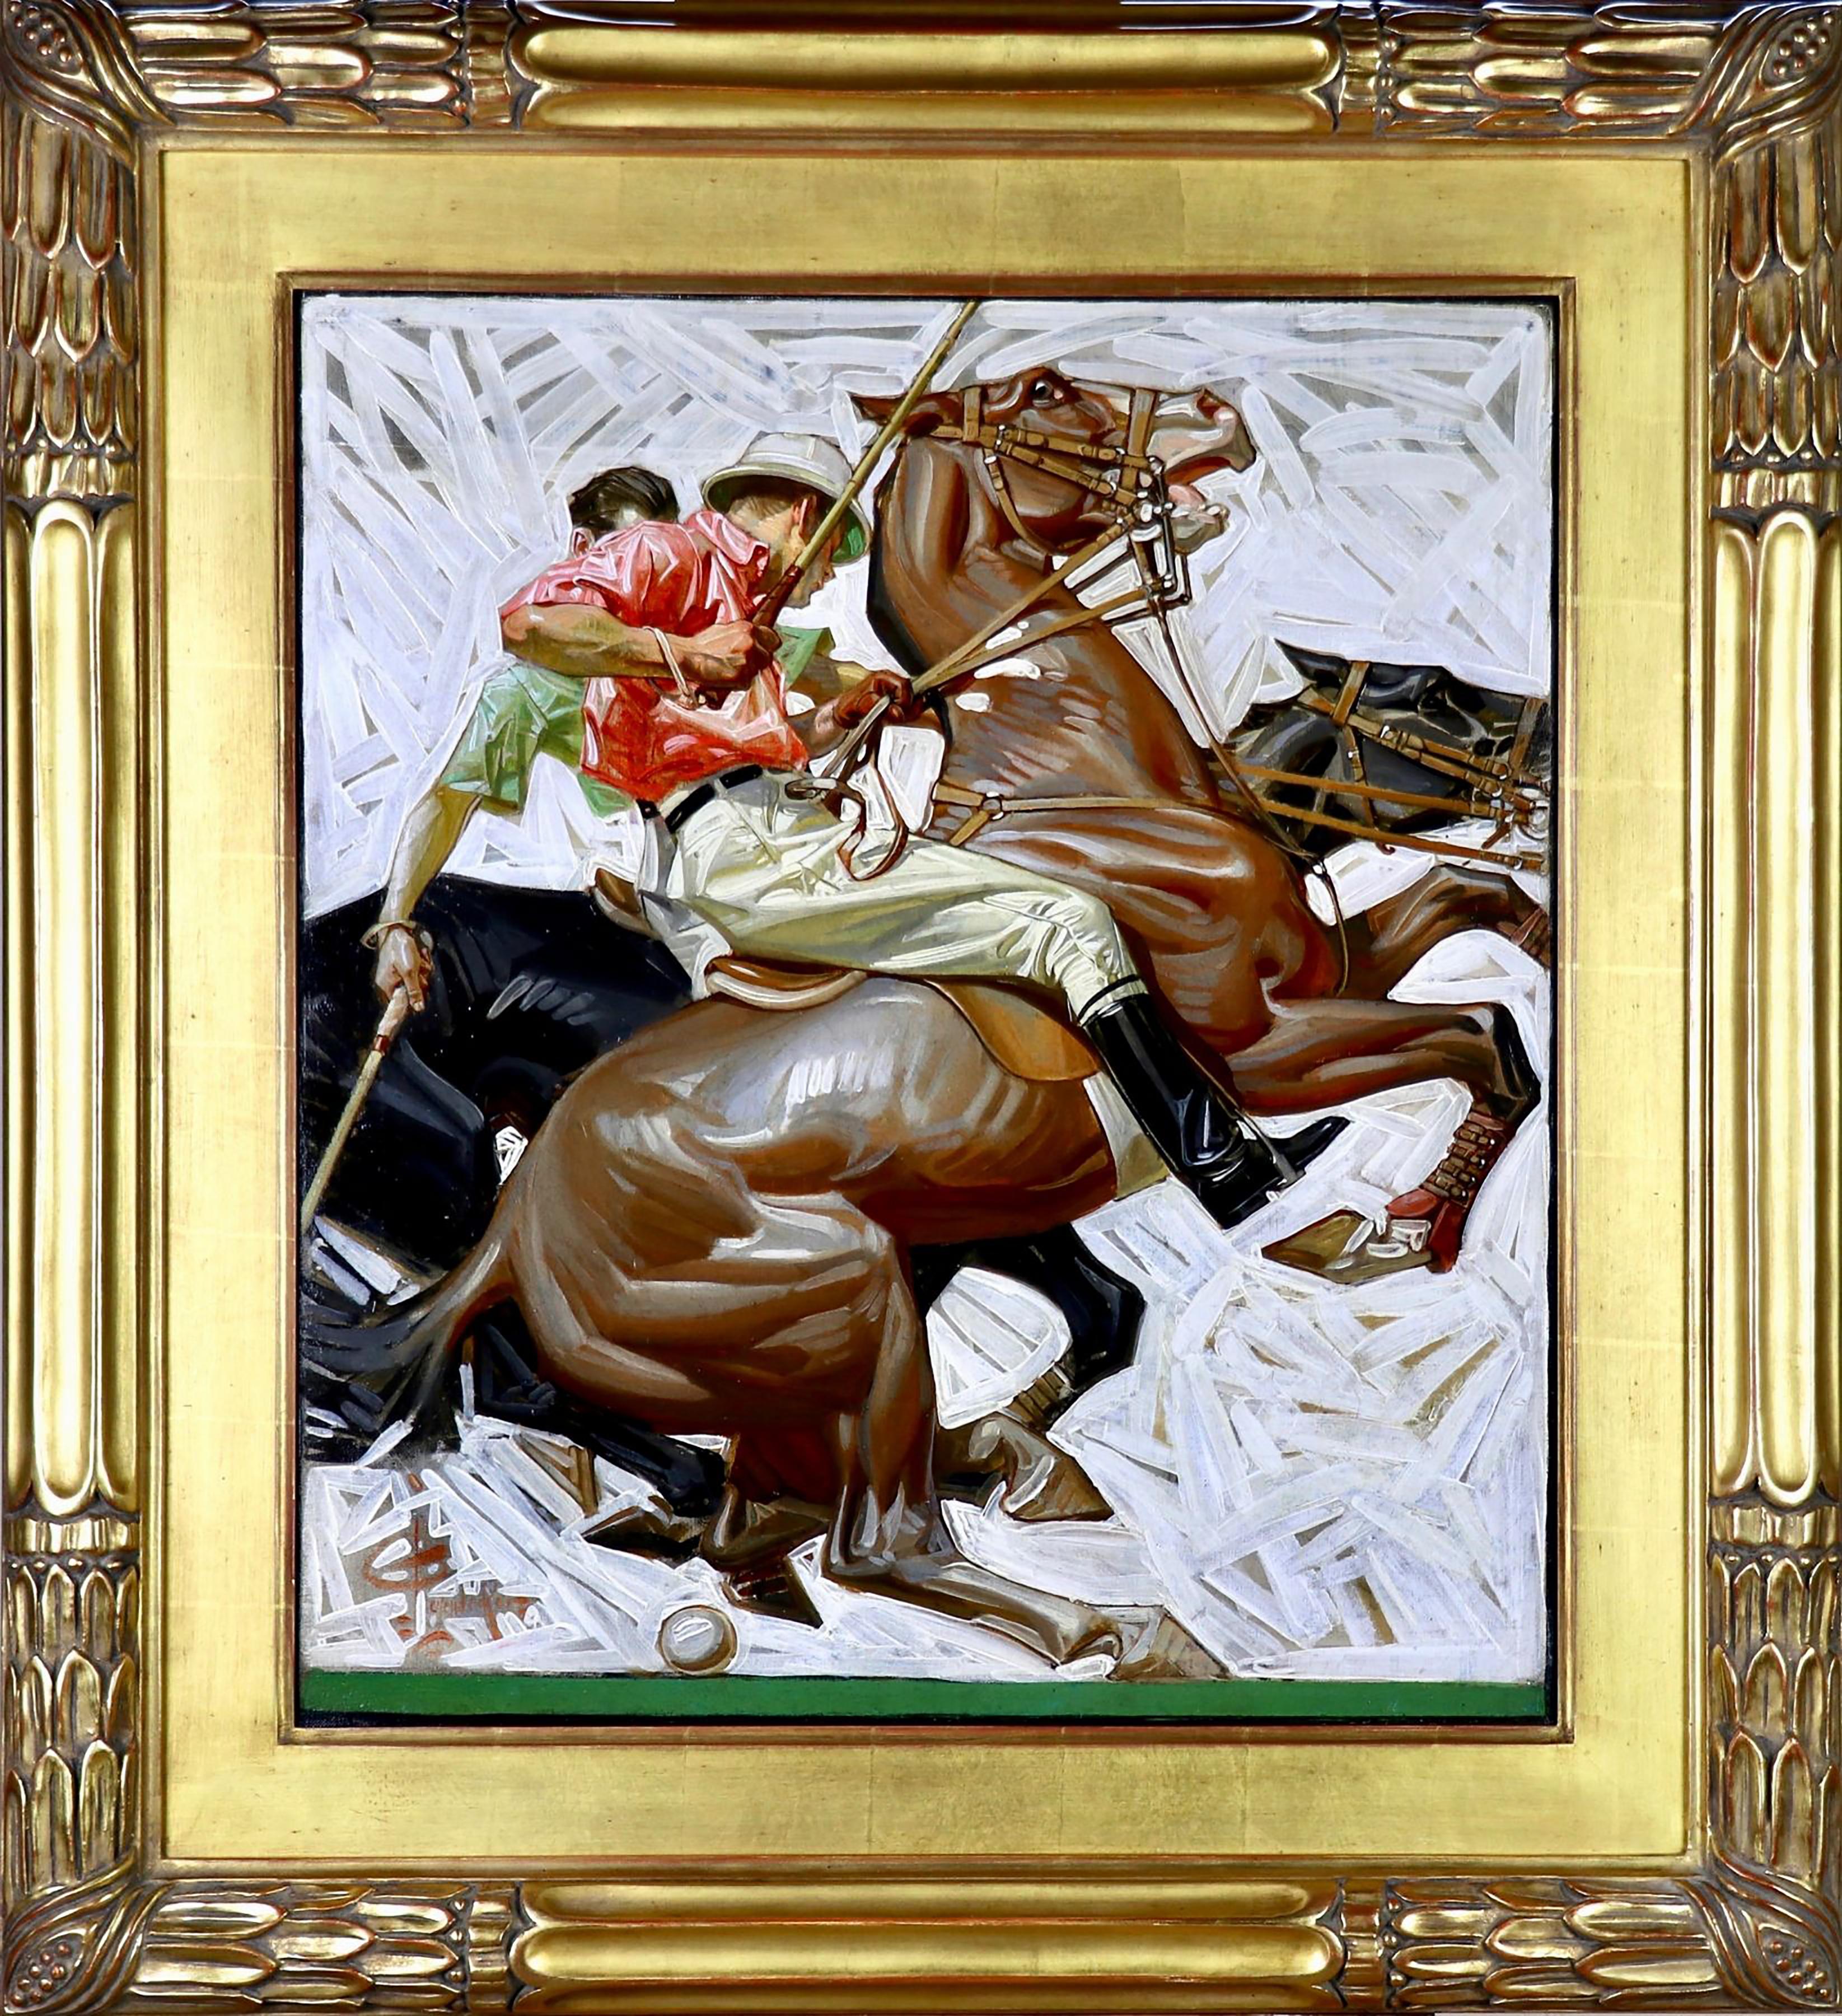 Polo Players on Horseback, Kuppenheimer Advertisement - Painting by Joseph Christian Leyendecker